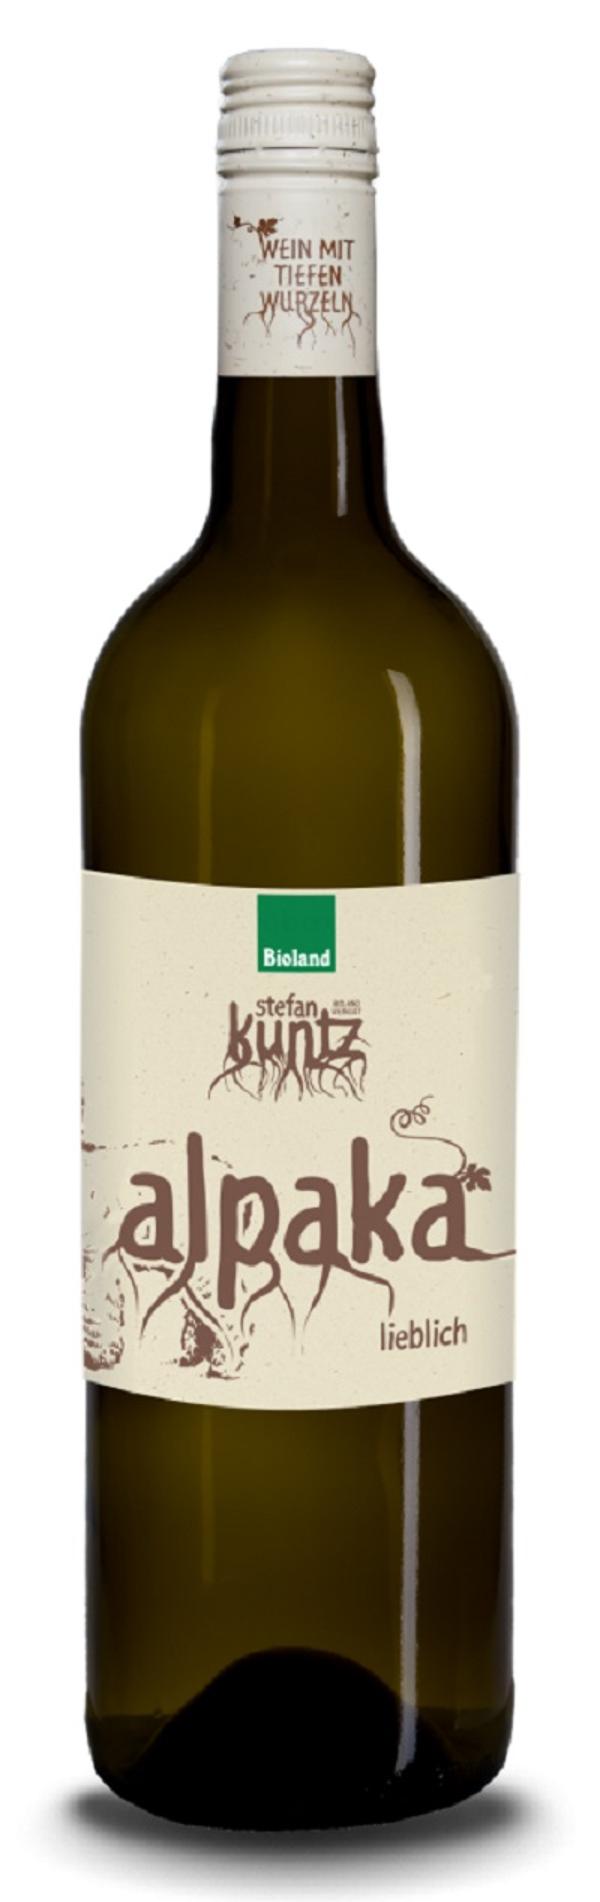 Produktfoto zu Alpaka Weisswein lieblich, 0,75 l